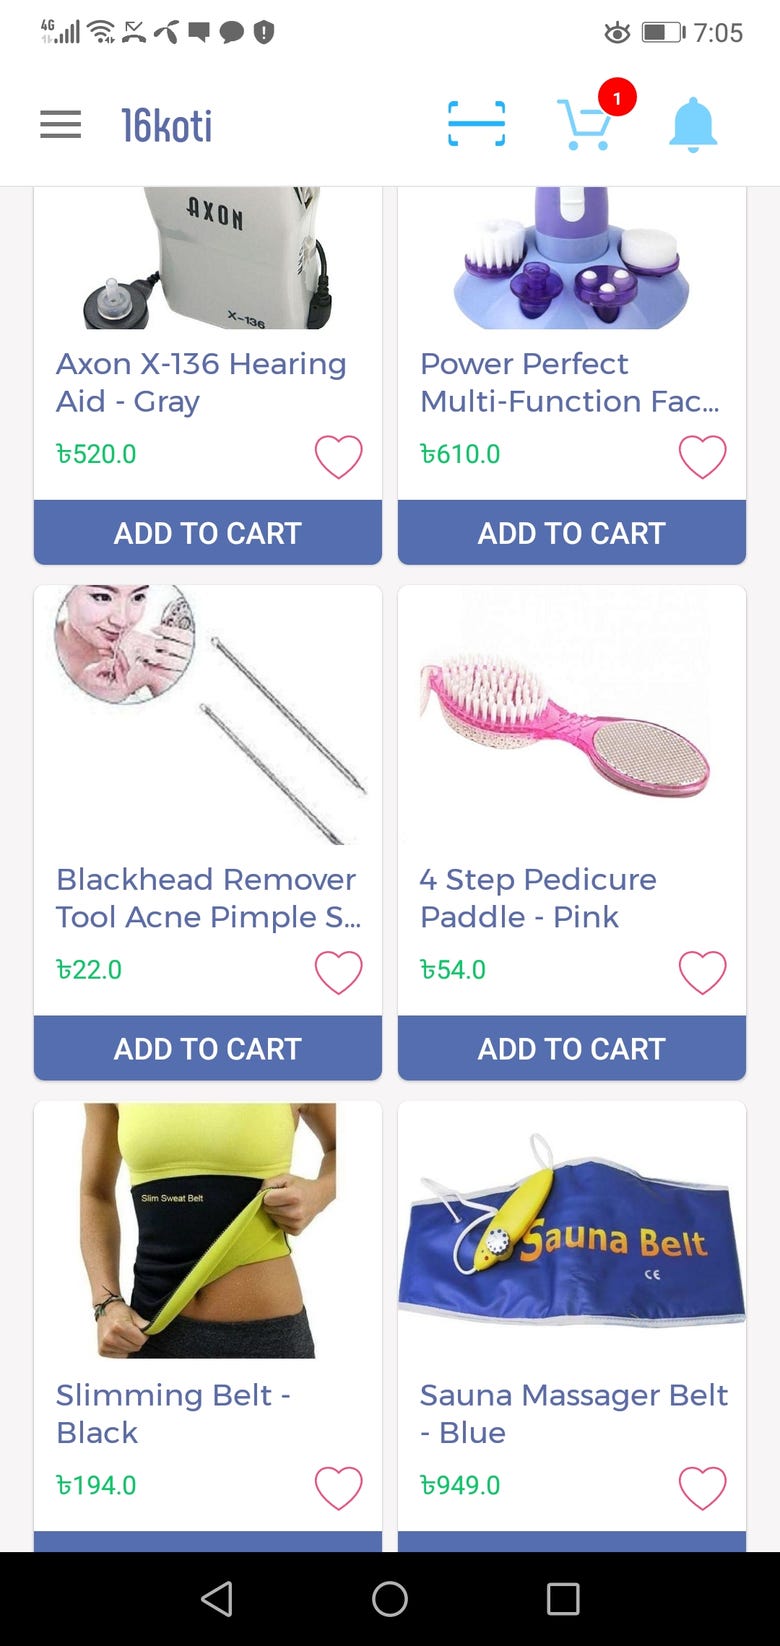 16koti Online Shopping App